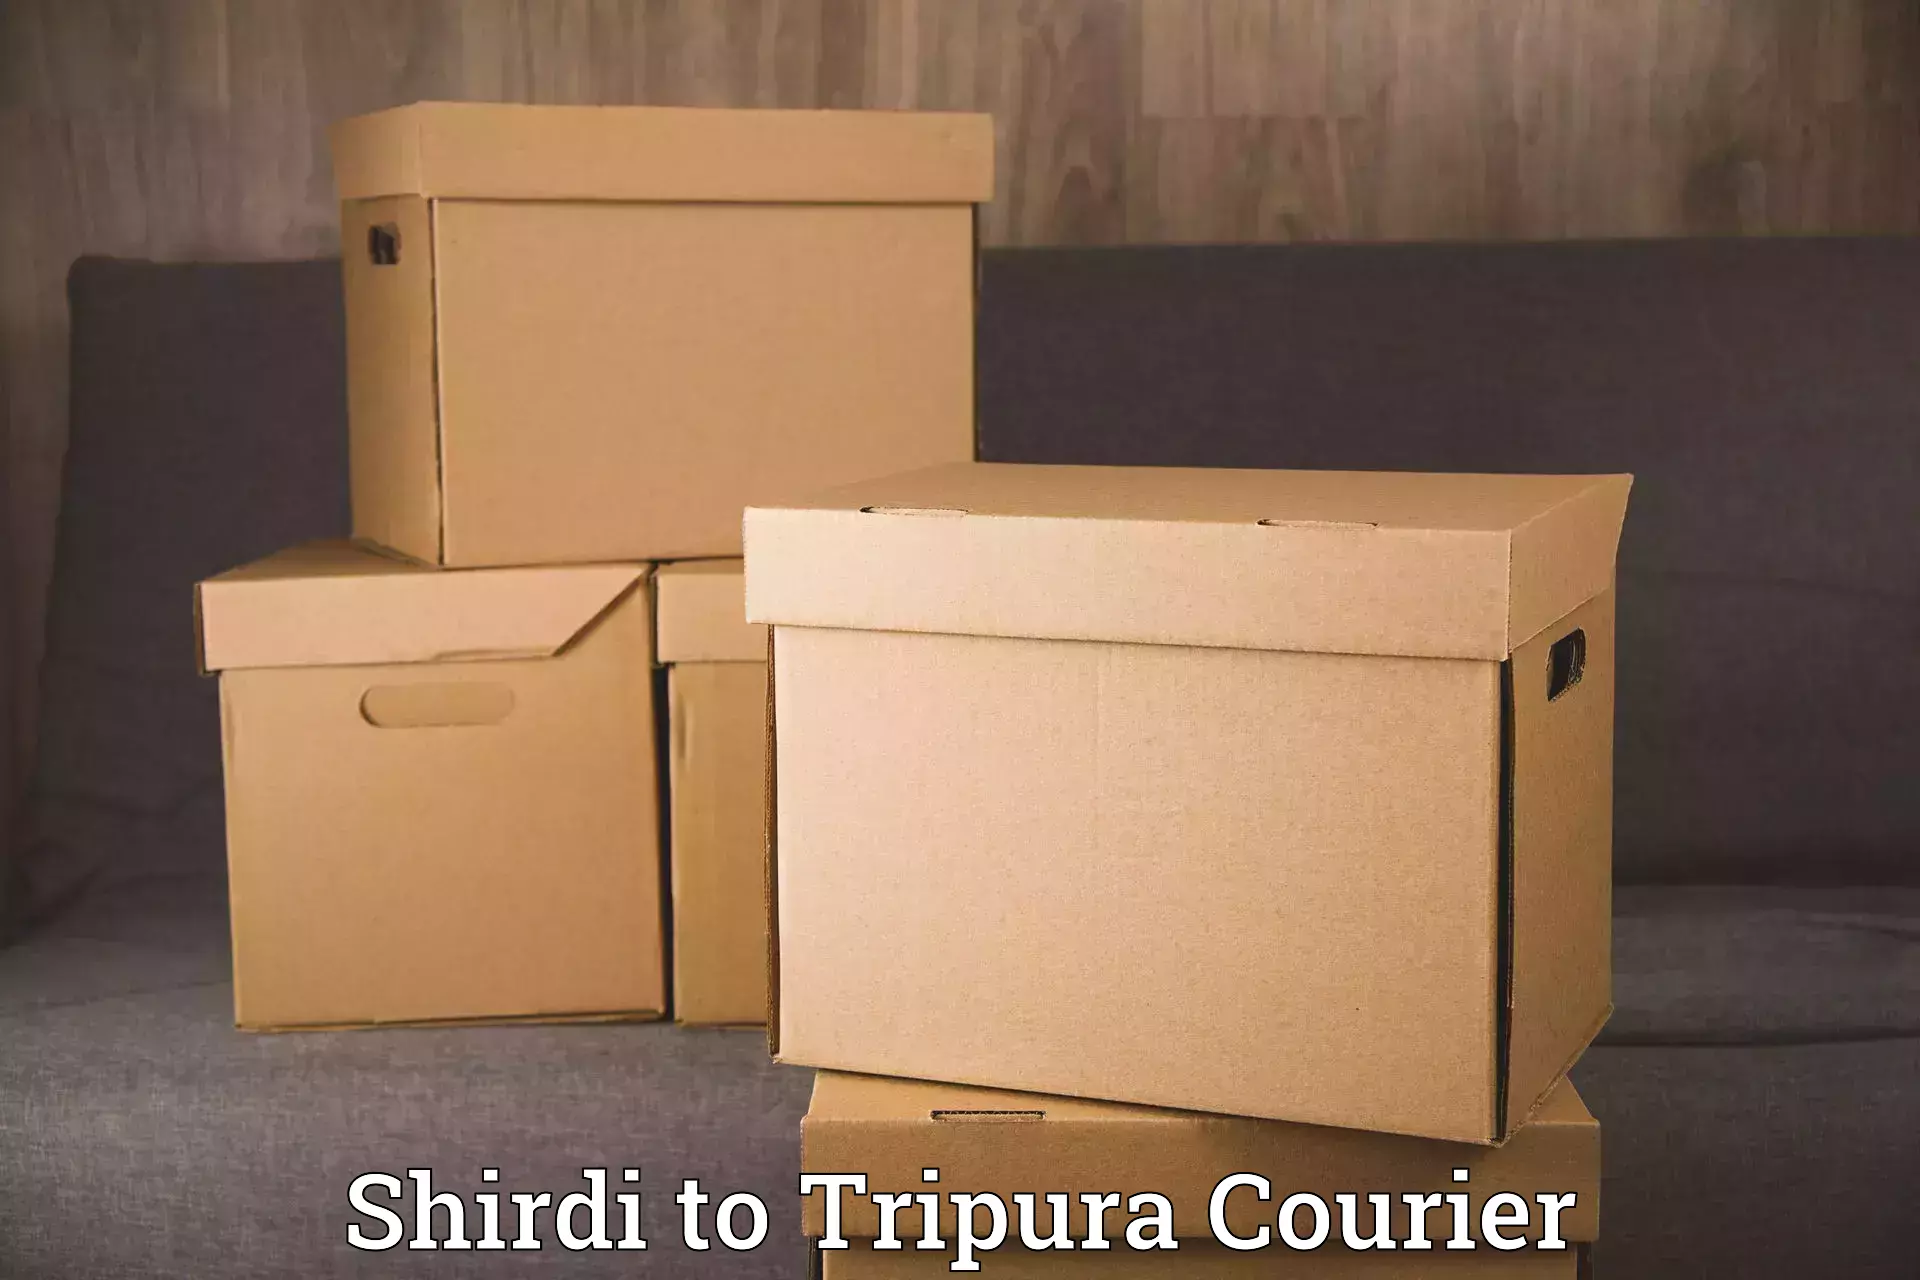 Furniture delivery service Shirdi to Tripura